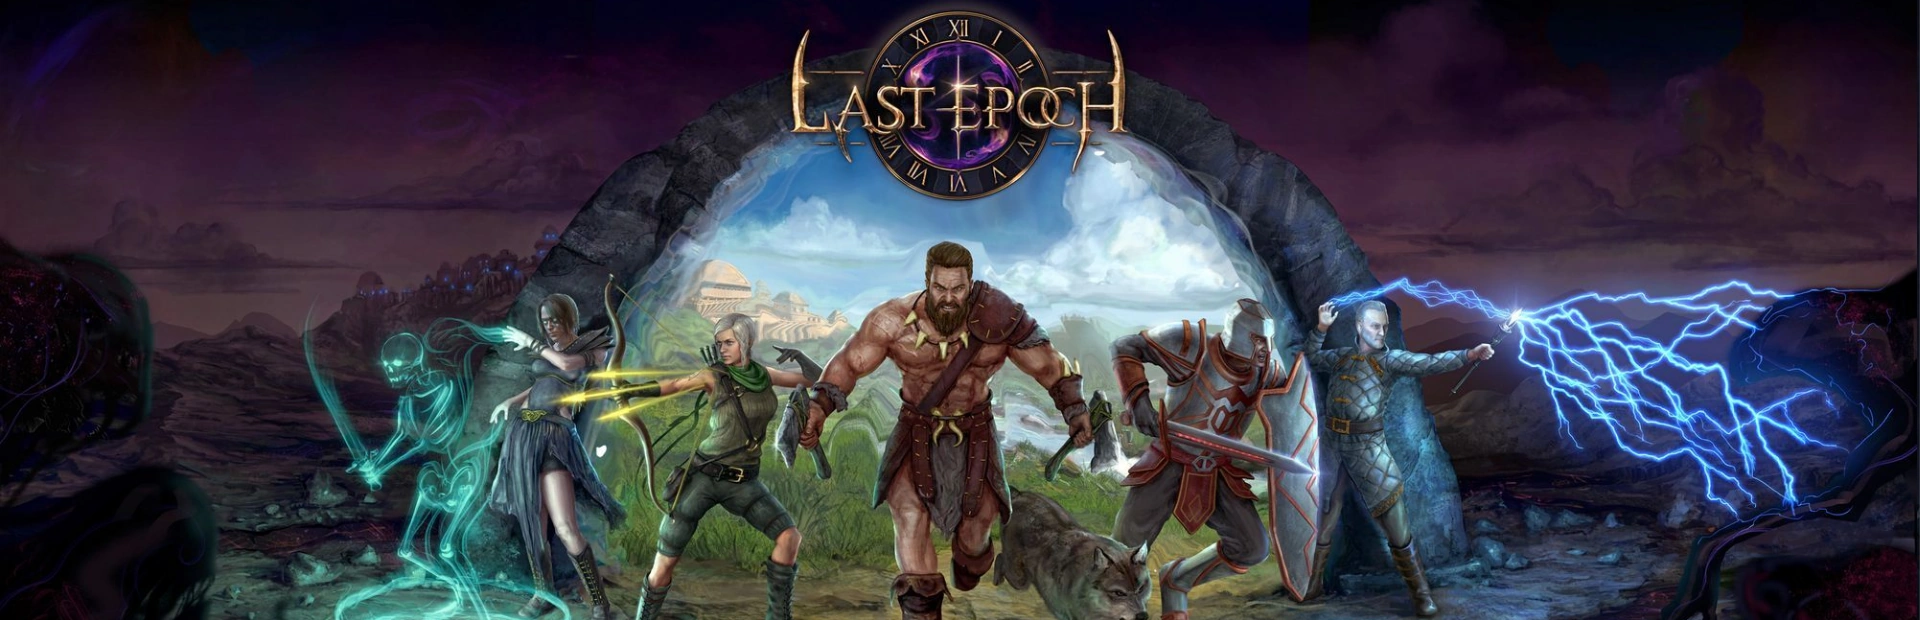 دانلود بازی Last Epoch برای کامپیوتر | گیمباتو